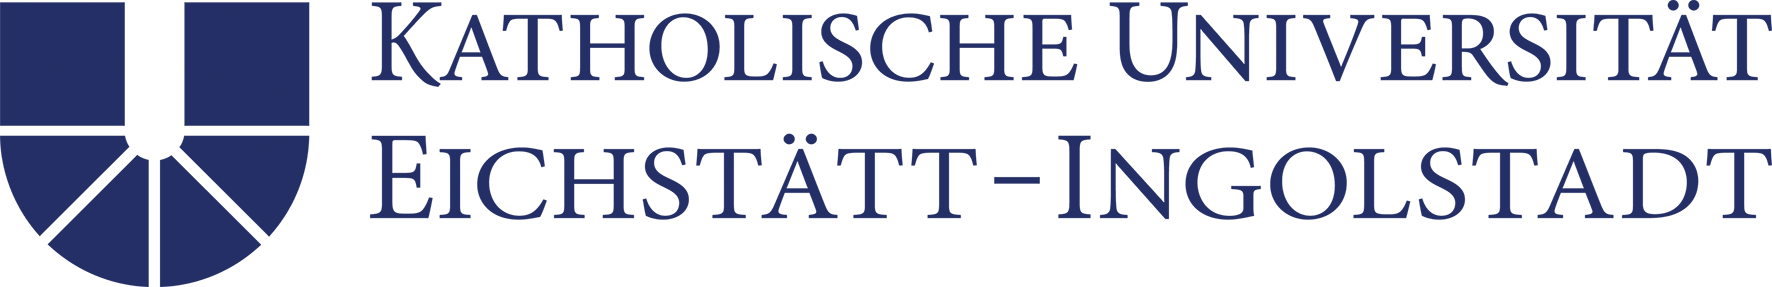 Logo Katholische Universität Eichstätt-Ingolstadt